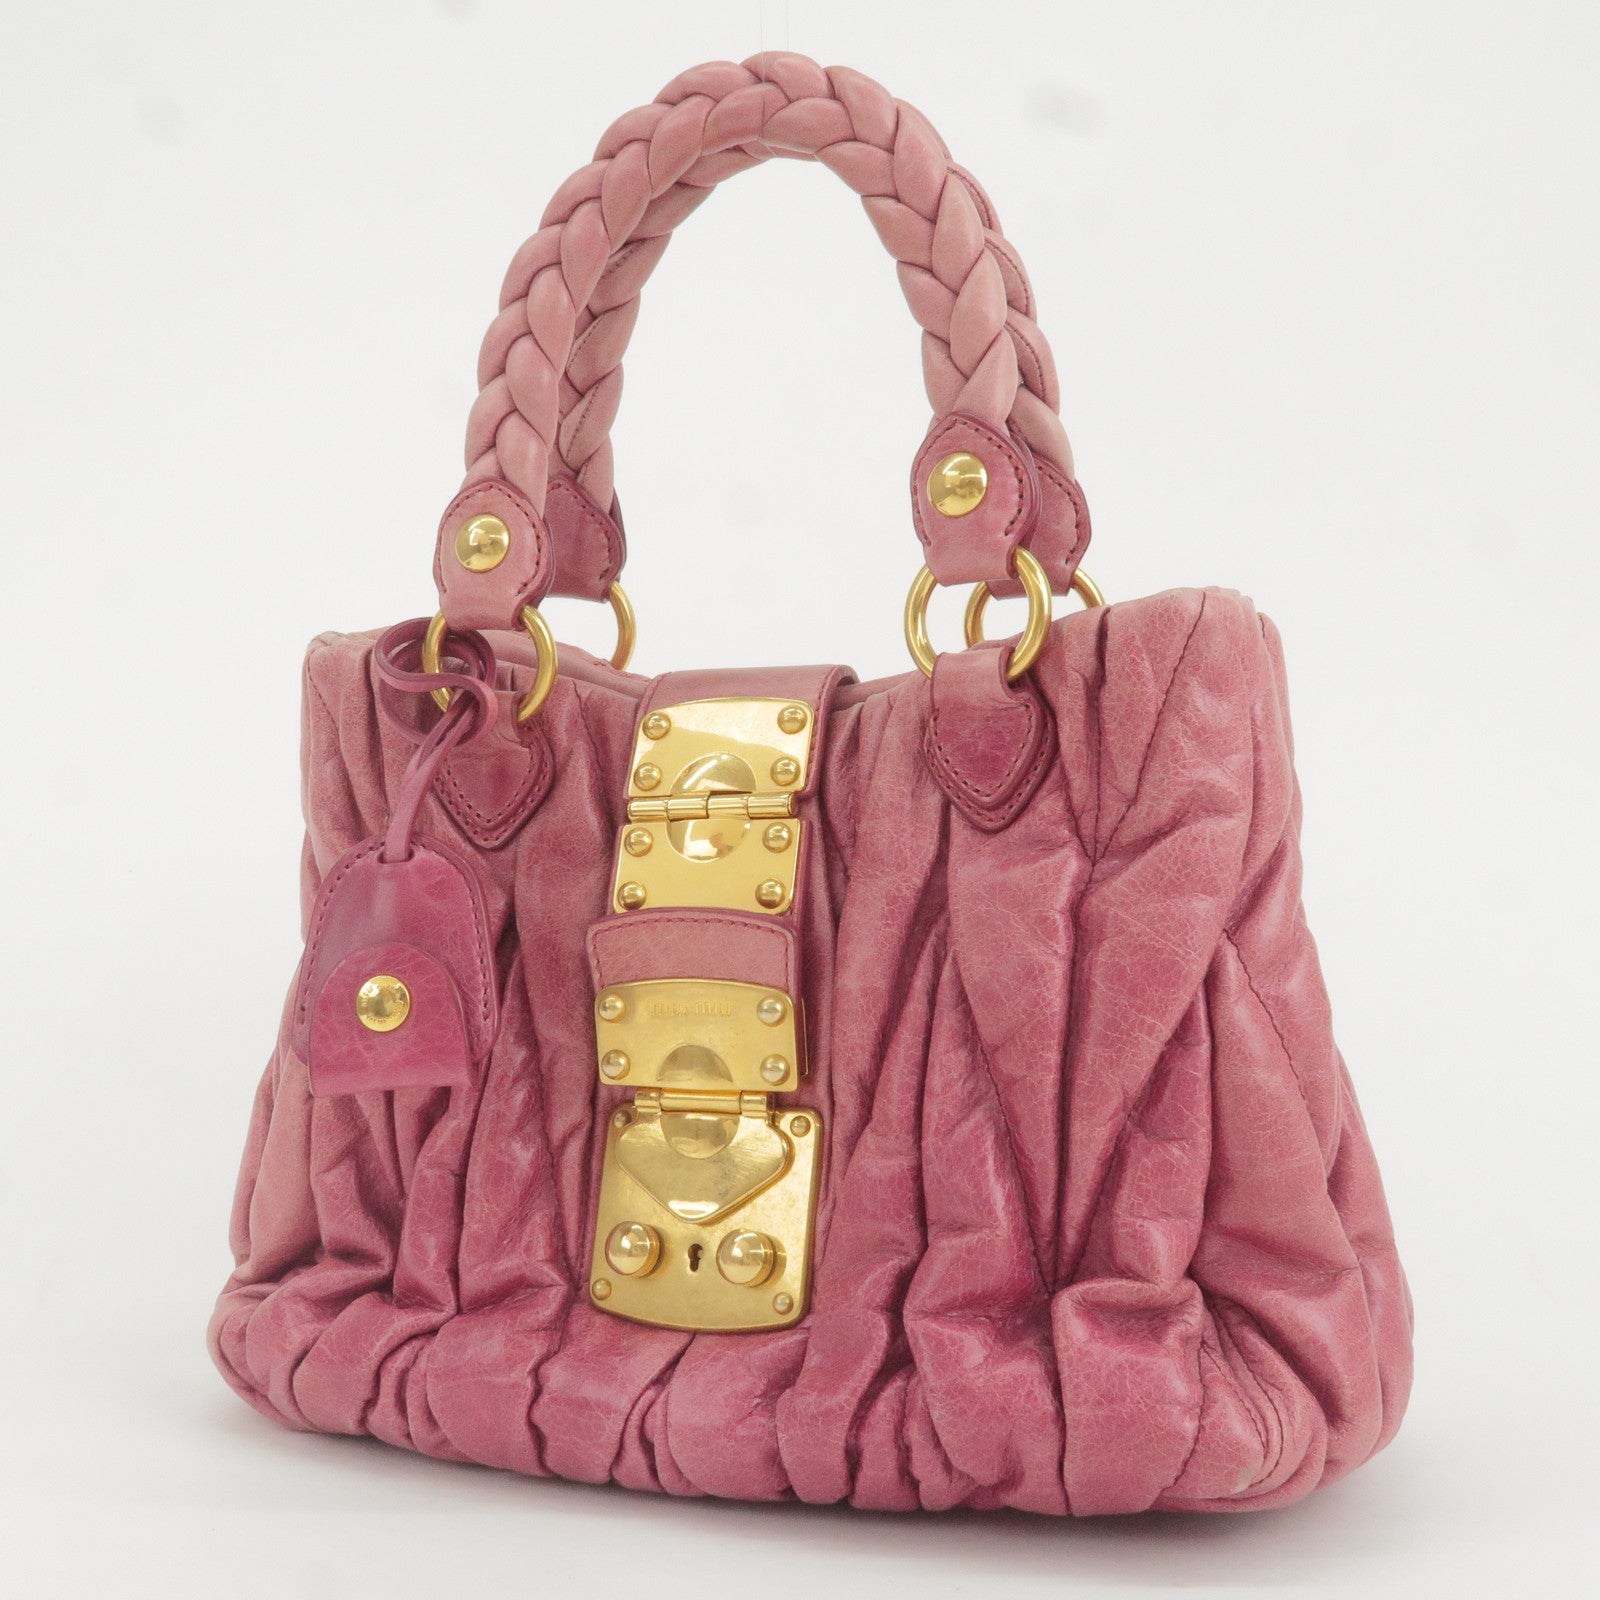 Miu Miu Hand Bag Leather 2way Pink Auction